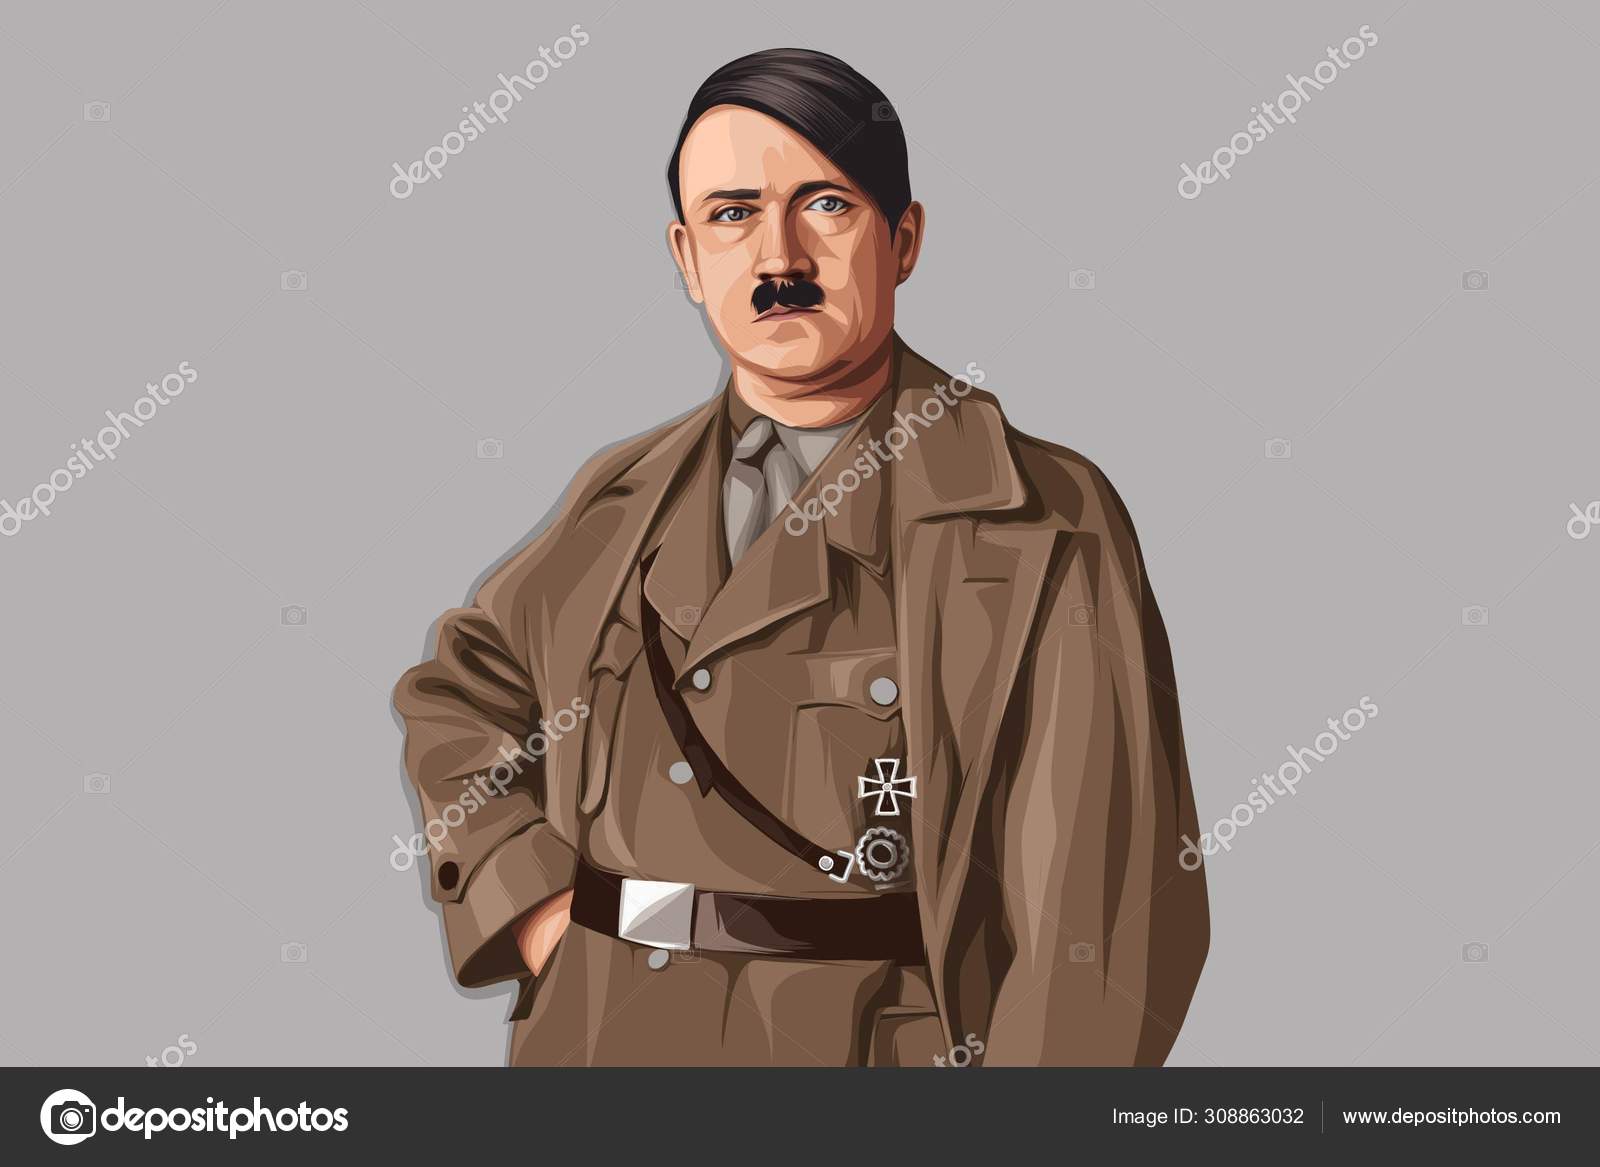 Hitler imágenes de stock de arte vectorial | Depositphotos